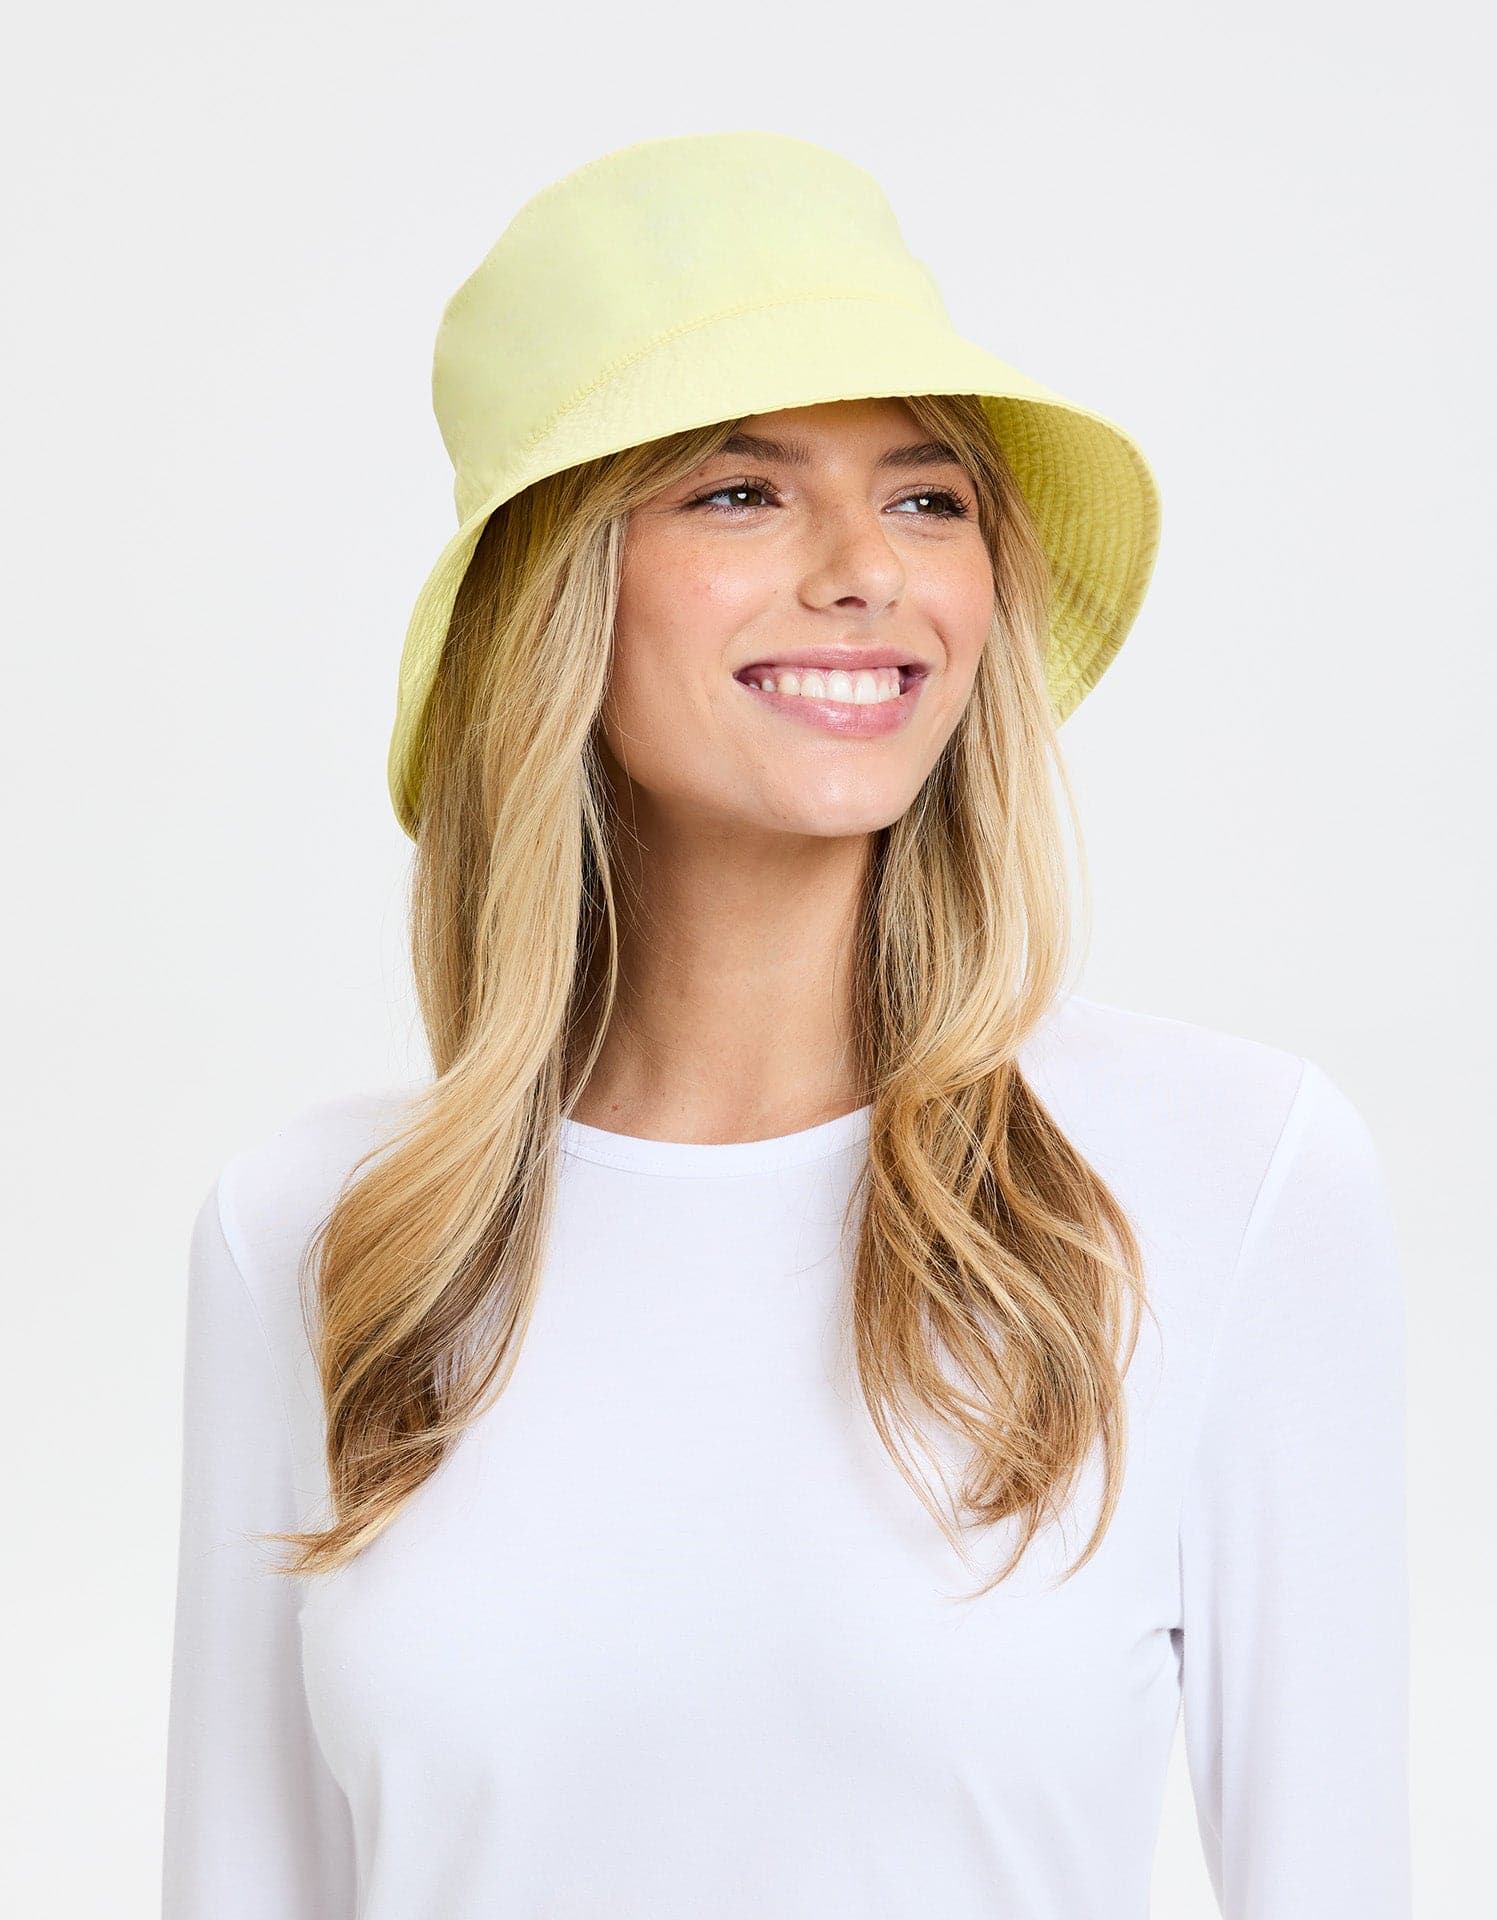 Solbari Bondi Bucket Hat UPF50+ UV Protection, Sun Protective Hat